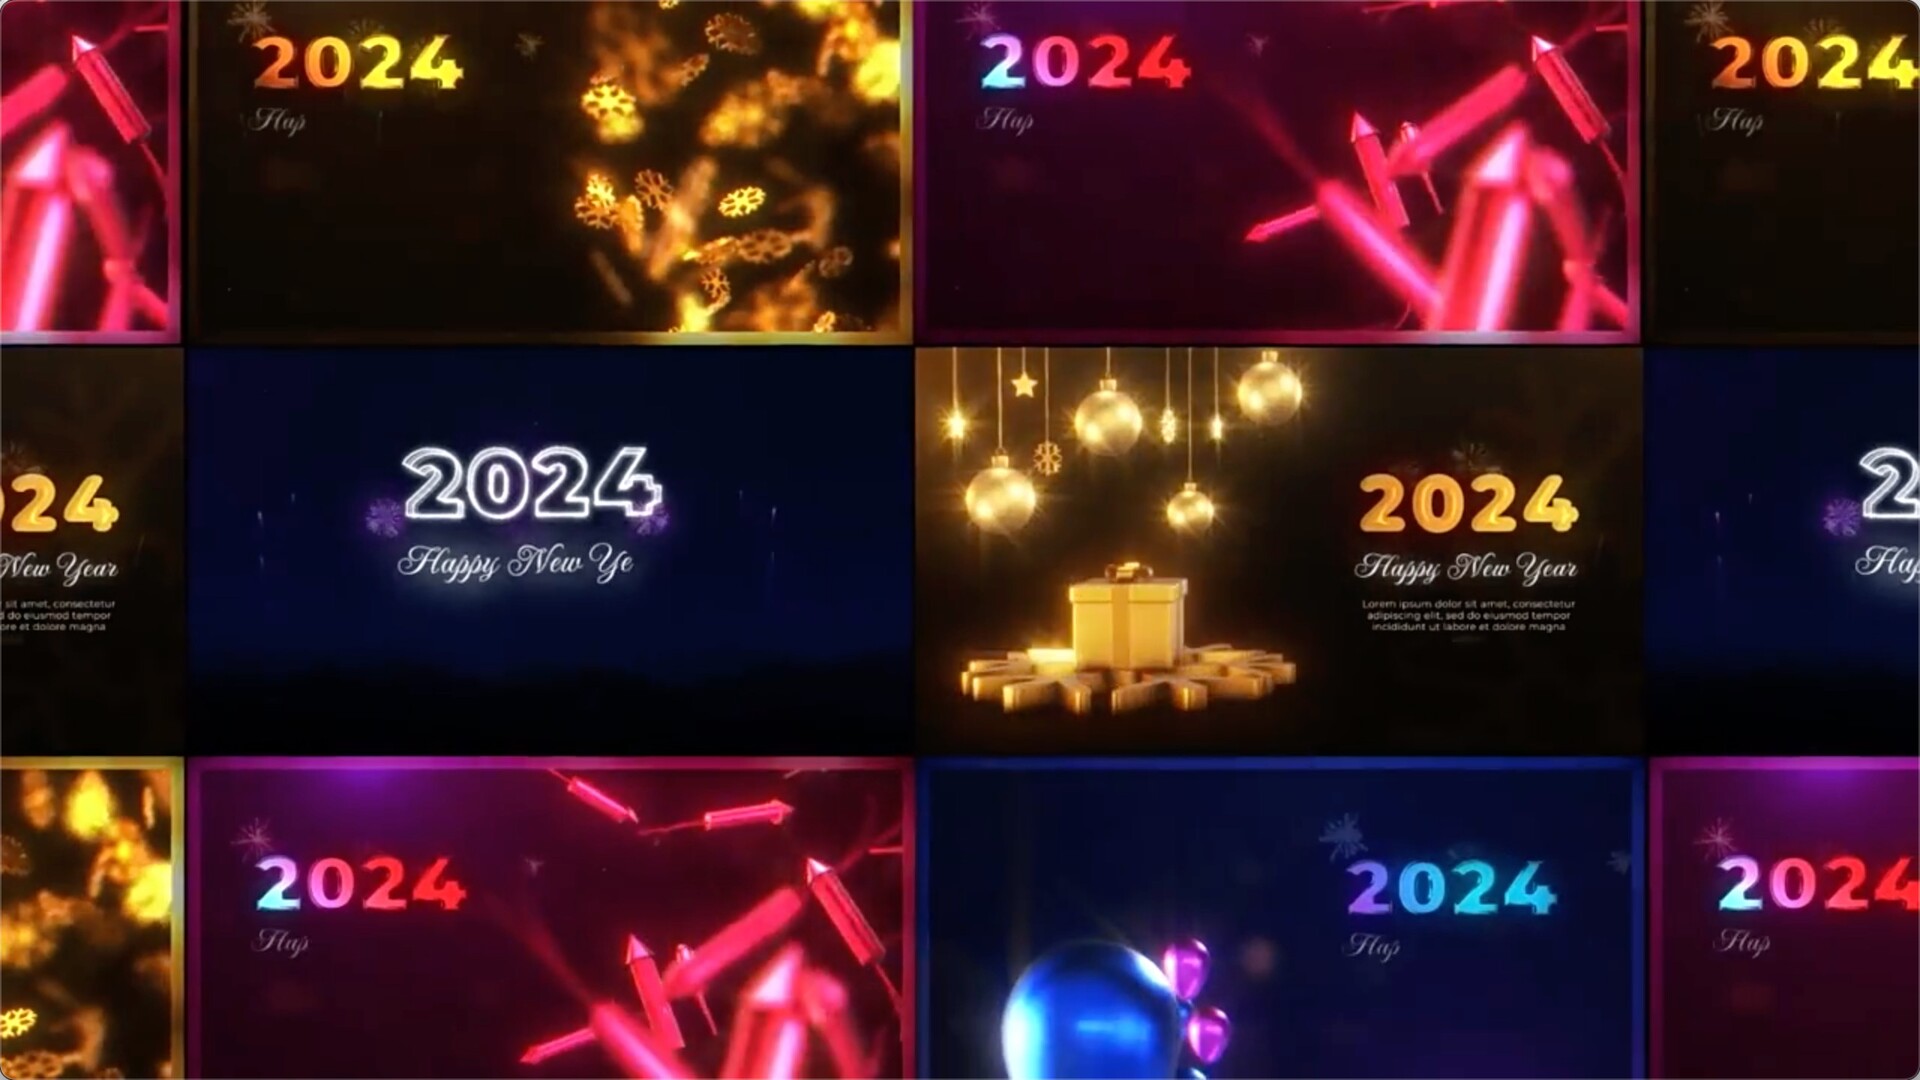 AE模板-2024新年快乐问候祝福展示动画 New Year Greetings Pack